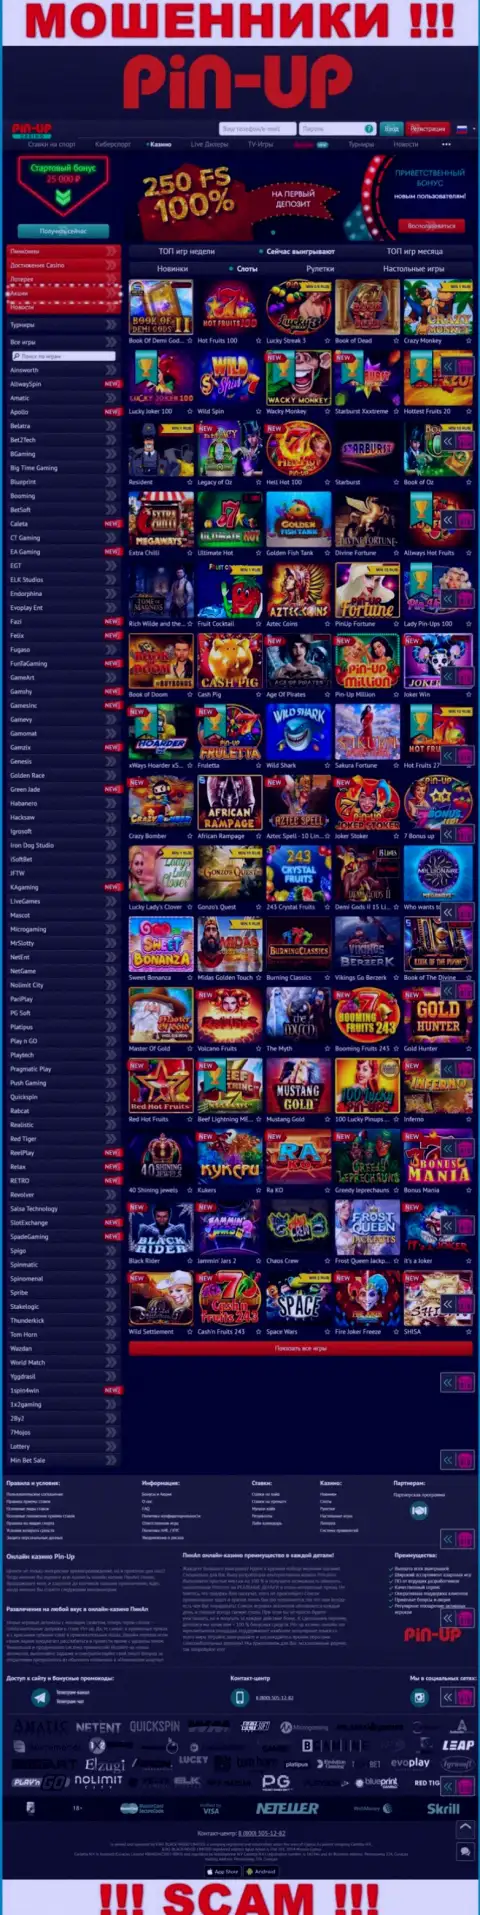 Пин-Ап Казино - официальный сервис жуликов Pin-Up Casino